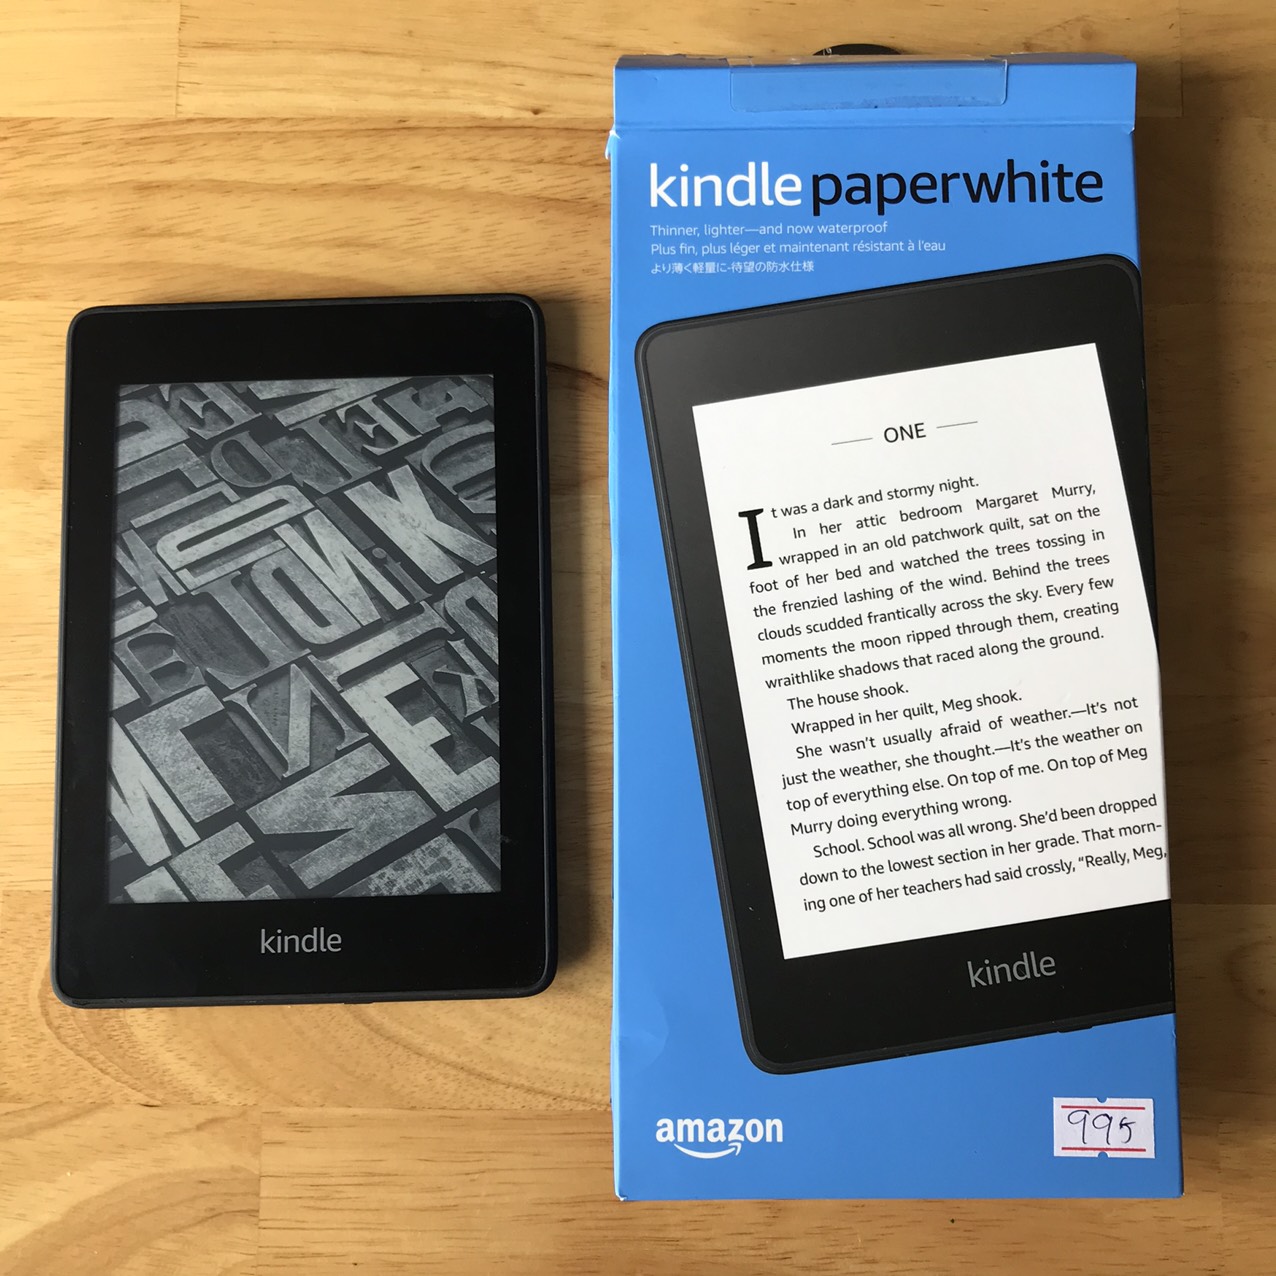 Tìm hiểu thêm về Kindle Paperwhite Gen 4 - người bạn đồng hành cho những người yêu sách tiện lợi. Với đèn nền đọc sách tiên tiến và thiết kế đẹp mắt, Kindle Paperwhite Gen 4 mang đến trải nghiệm đọc sách cực kỳ thoải mái. Xem hình ảnh liên quan để khám phá thêm về sản phẩm này.